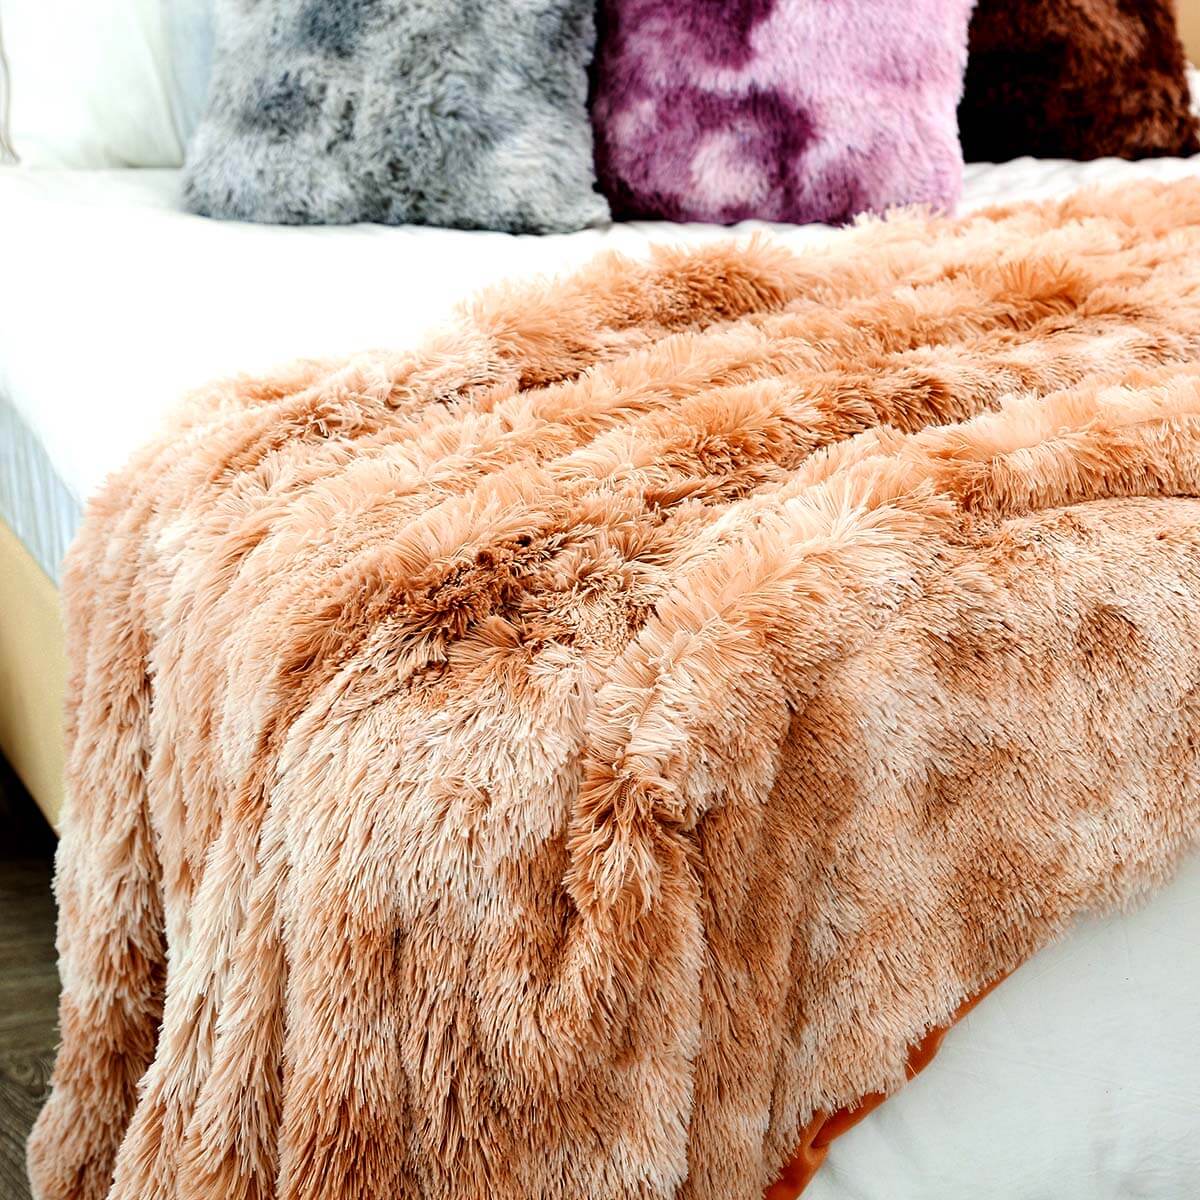 Shop Soft Plush Throw blanket - Goodlifebean Giant Plushies